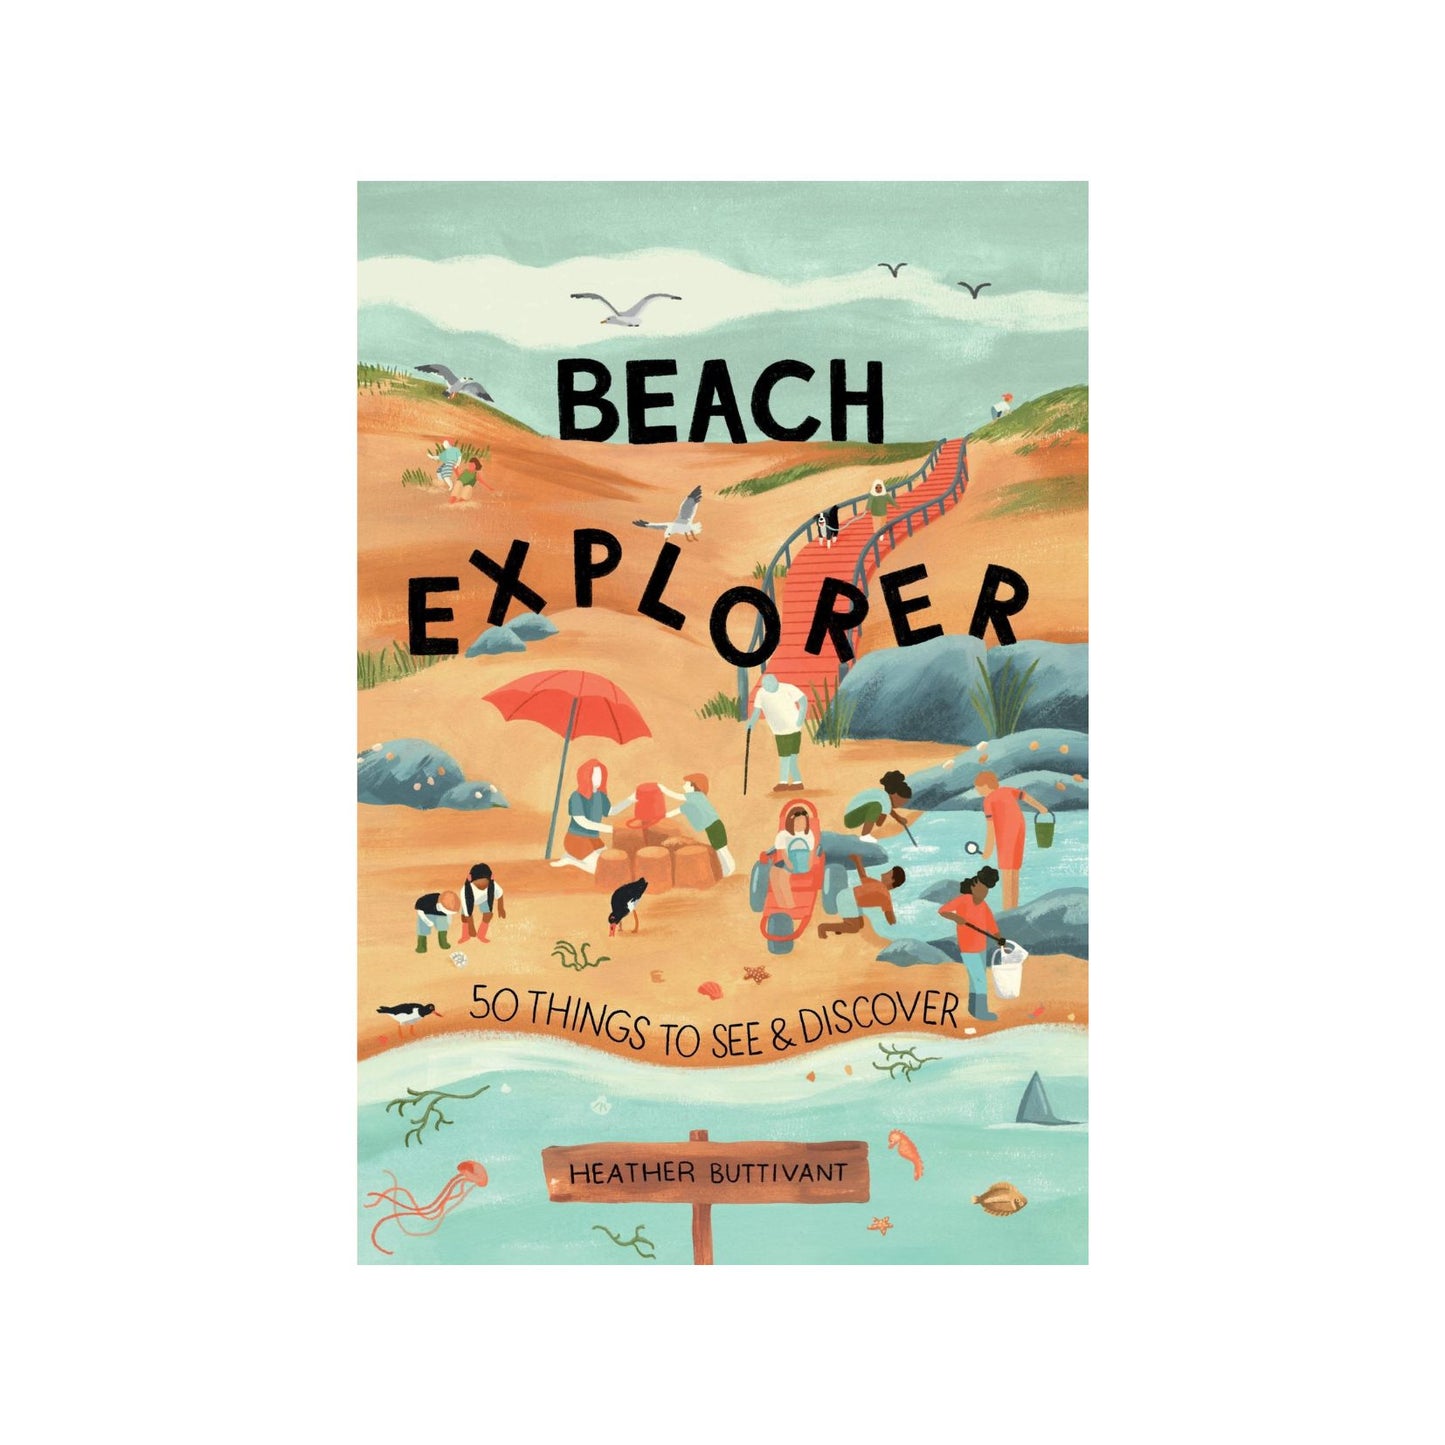 Beach Explorer by Heather Buttivant